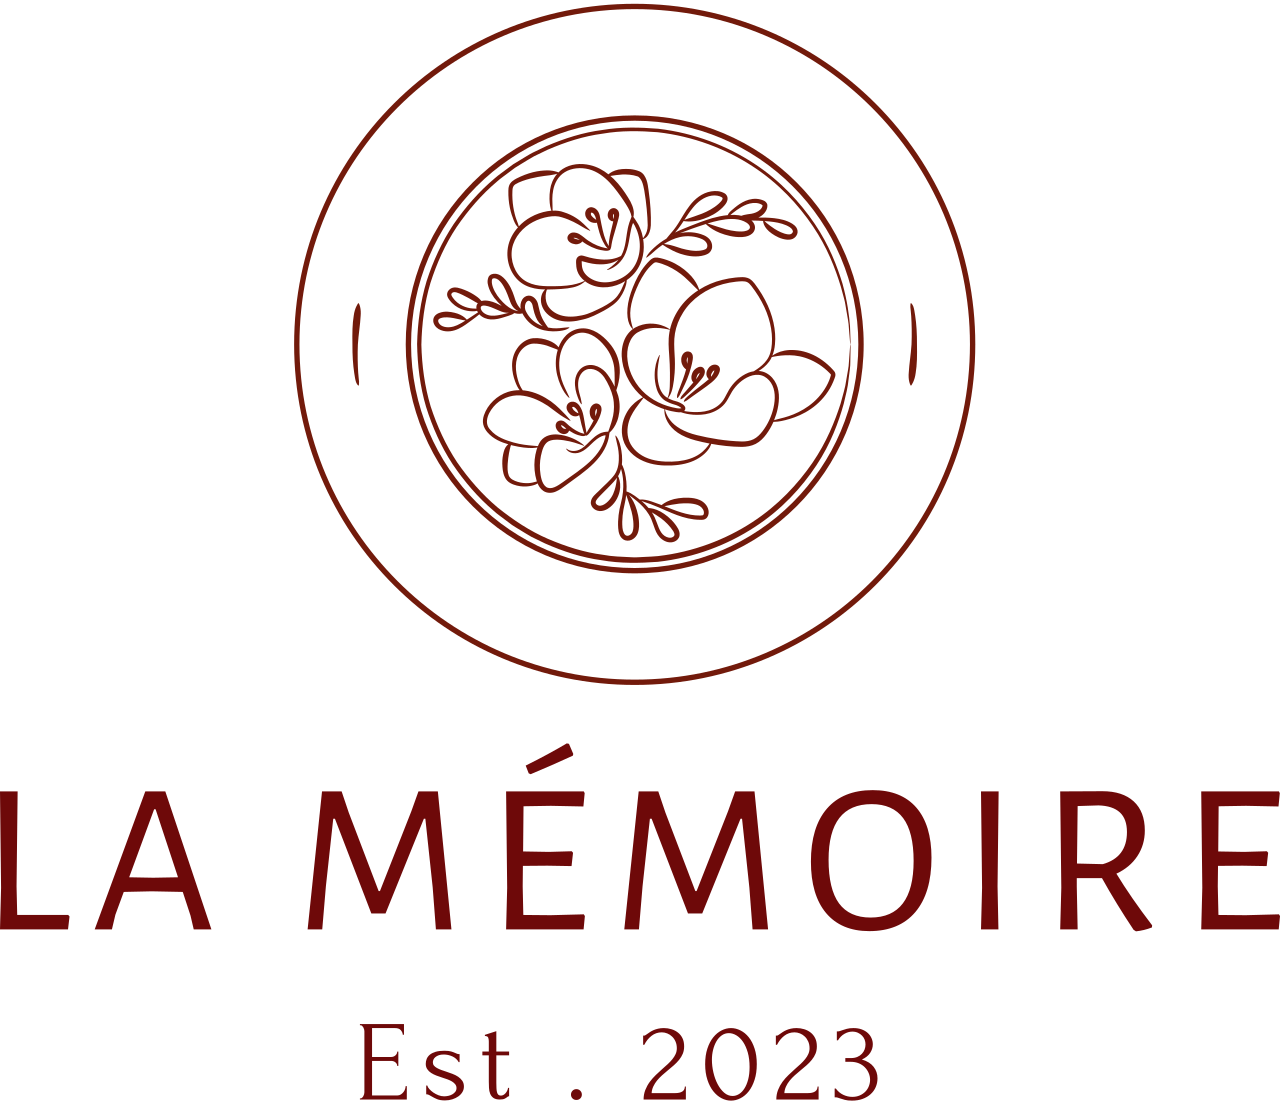 LA MÉMOIRE's logo